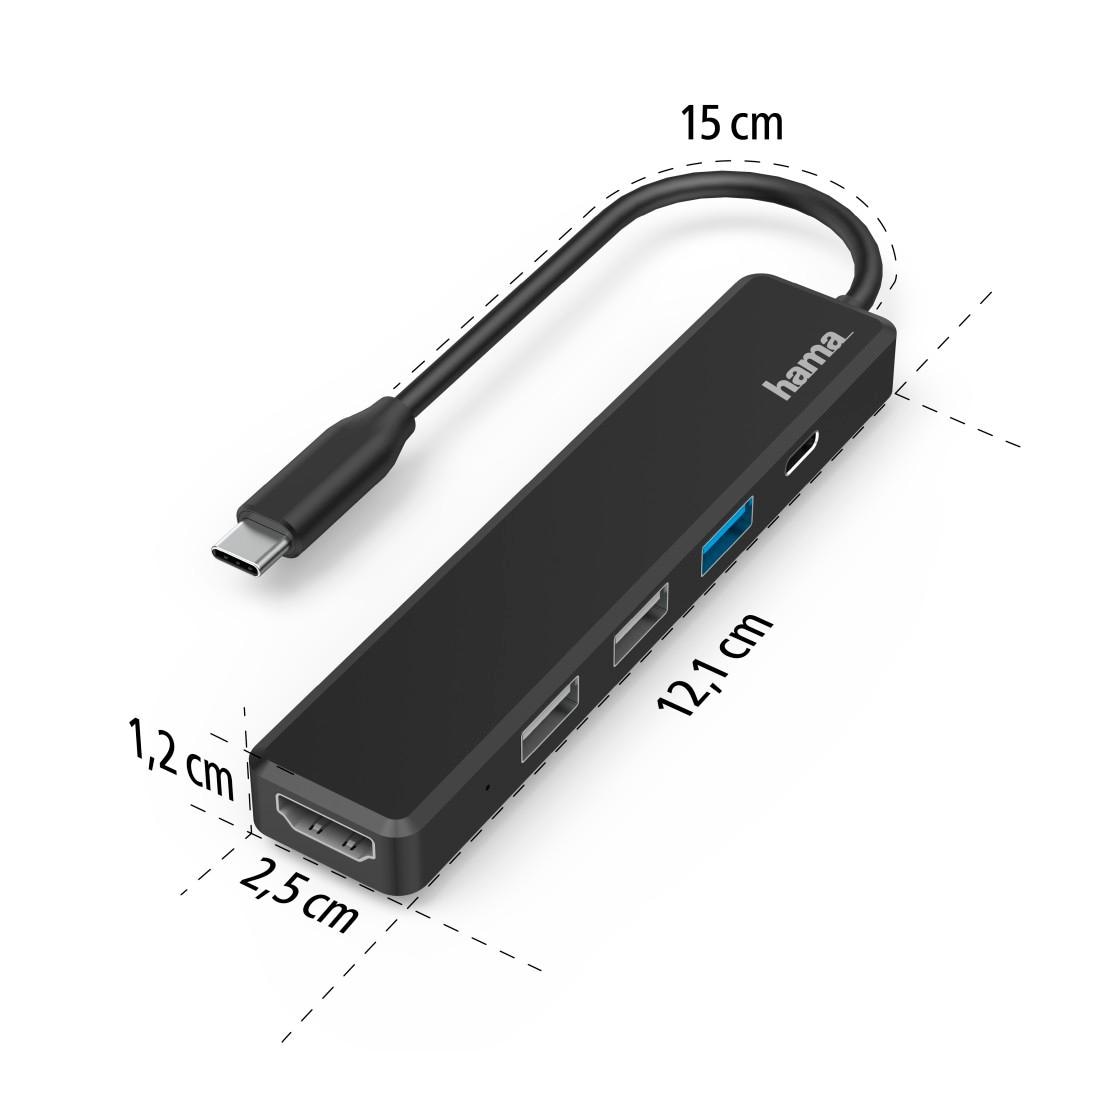 Hama USB-Adapter »USB C Hub, Multiport, 5 Ports, 3x USB A, USB C, HDMI™«, USB-C zu USB Typ A-USB-C-HDMI, 15 cm